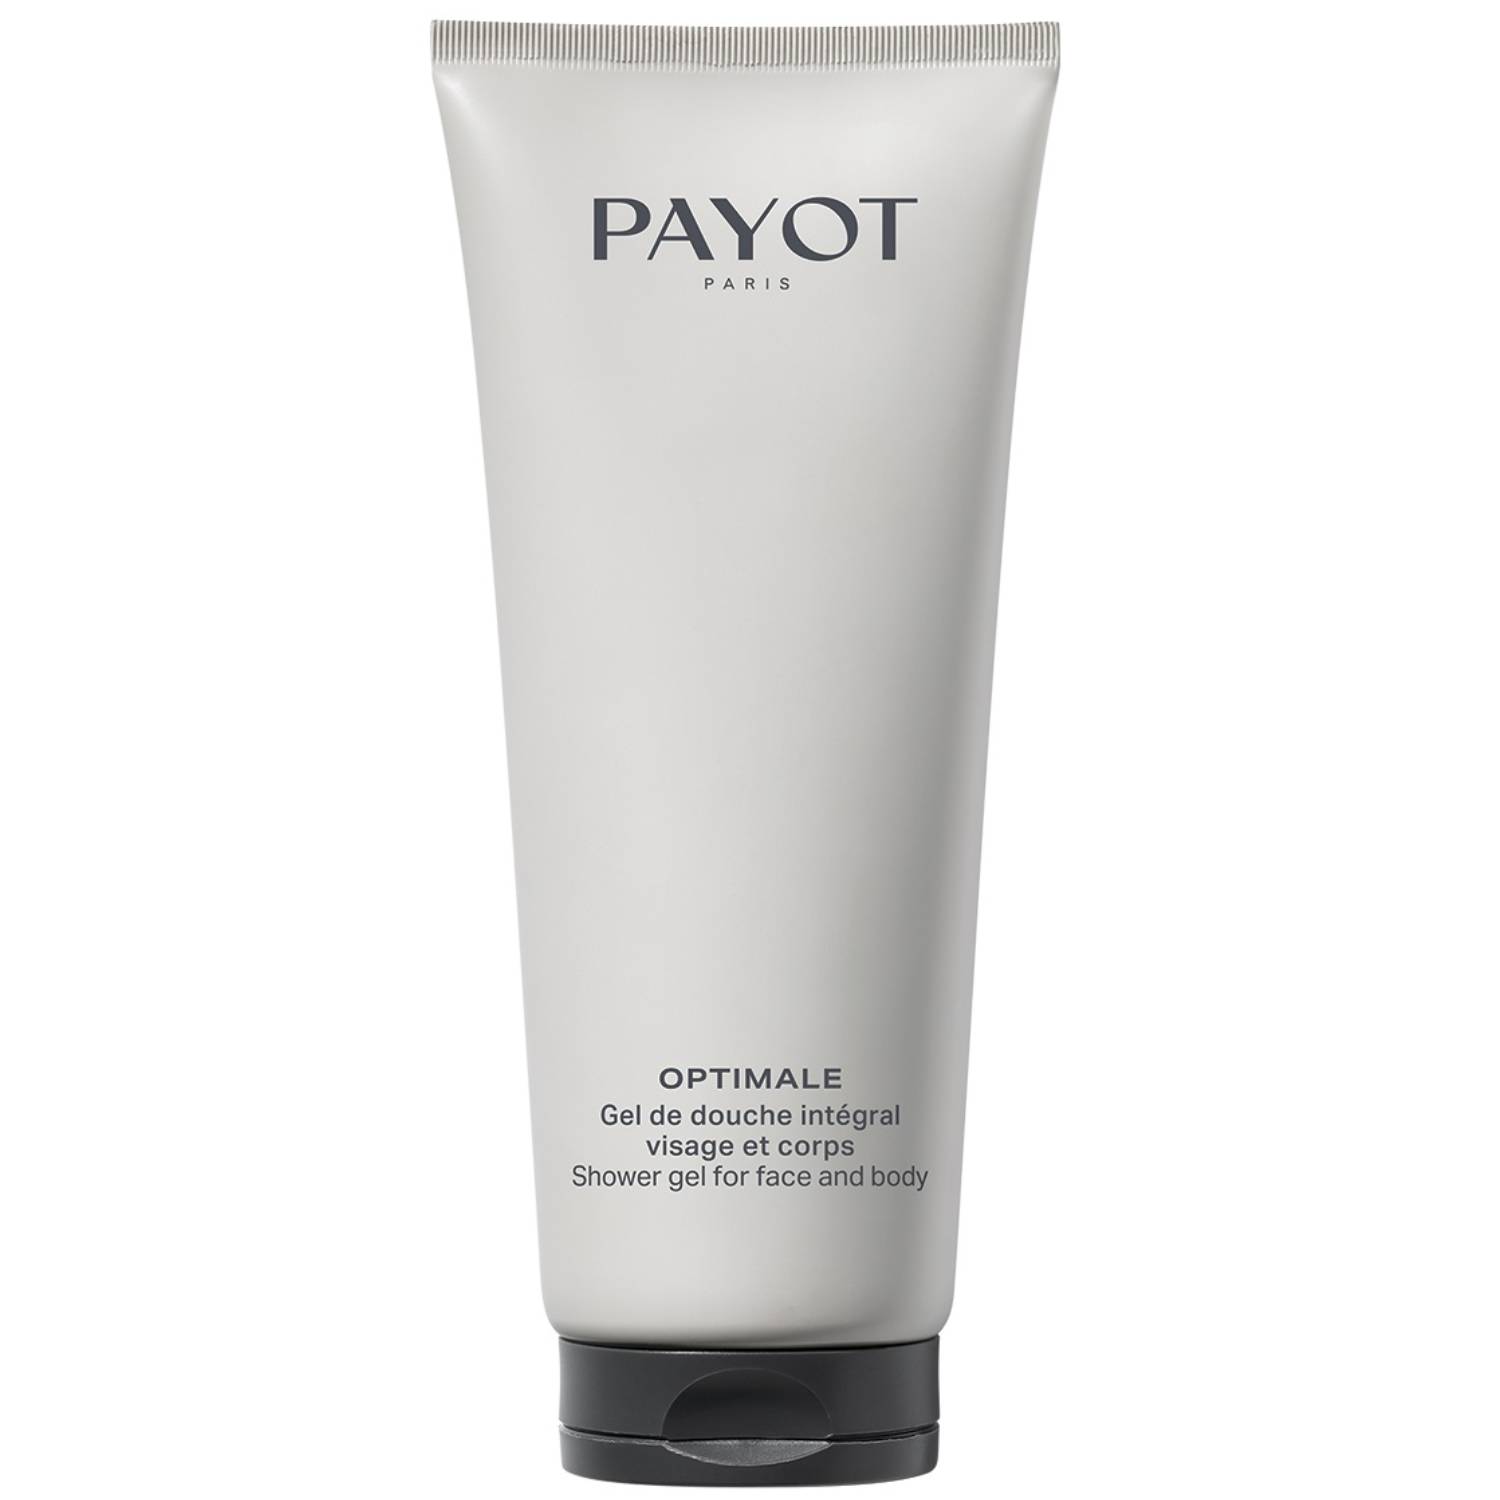 Payot Очищающий гель для волос, тела и лица Integral 3в1 для мужчин, 200 мл (Payot, Optimale)